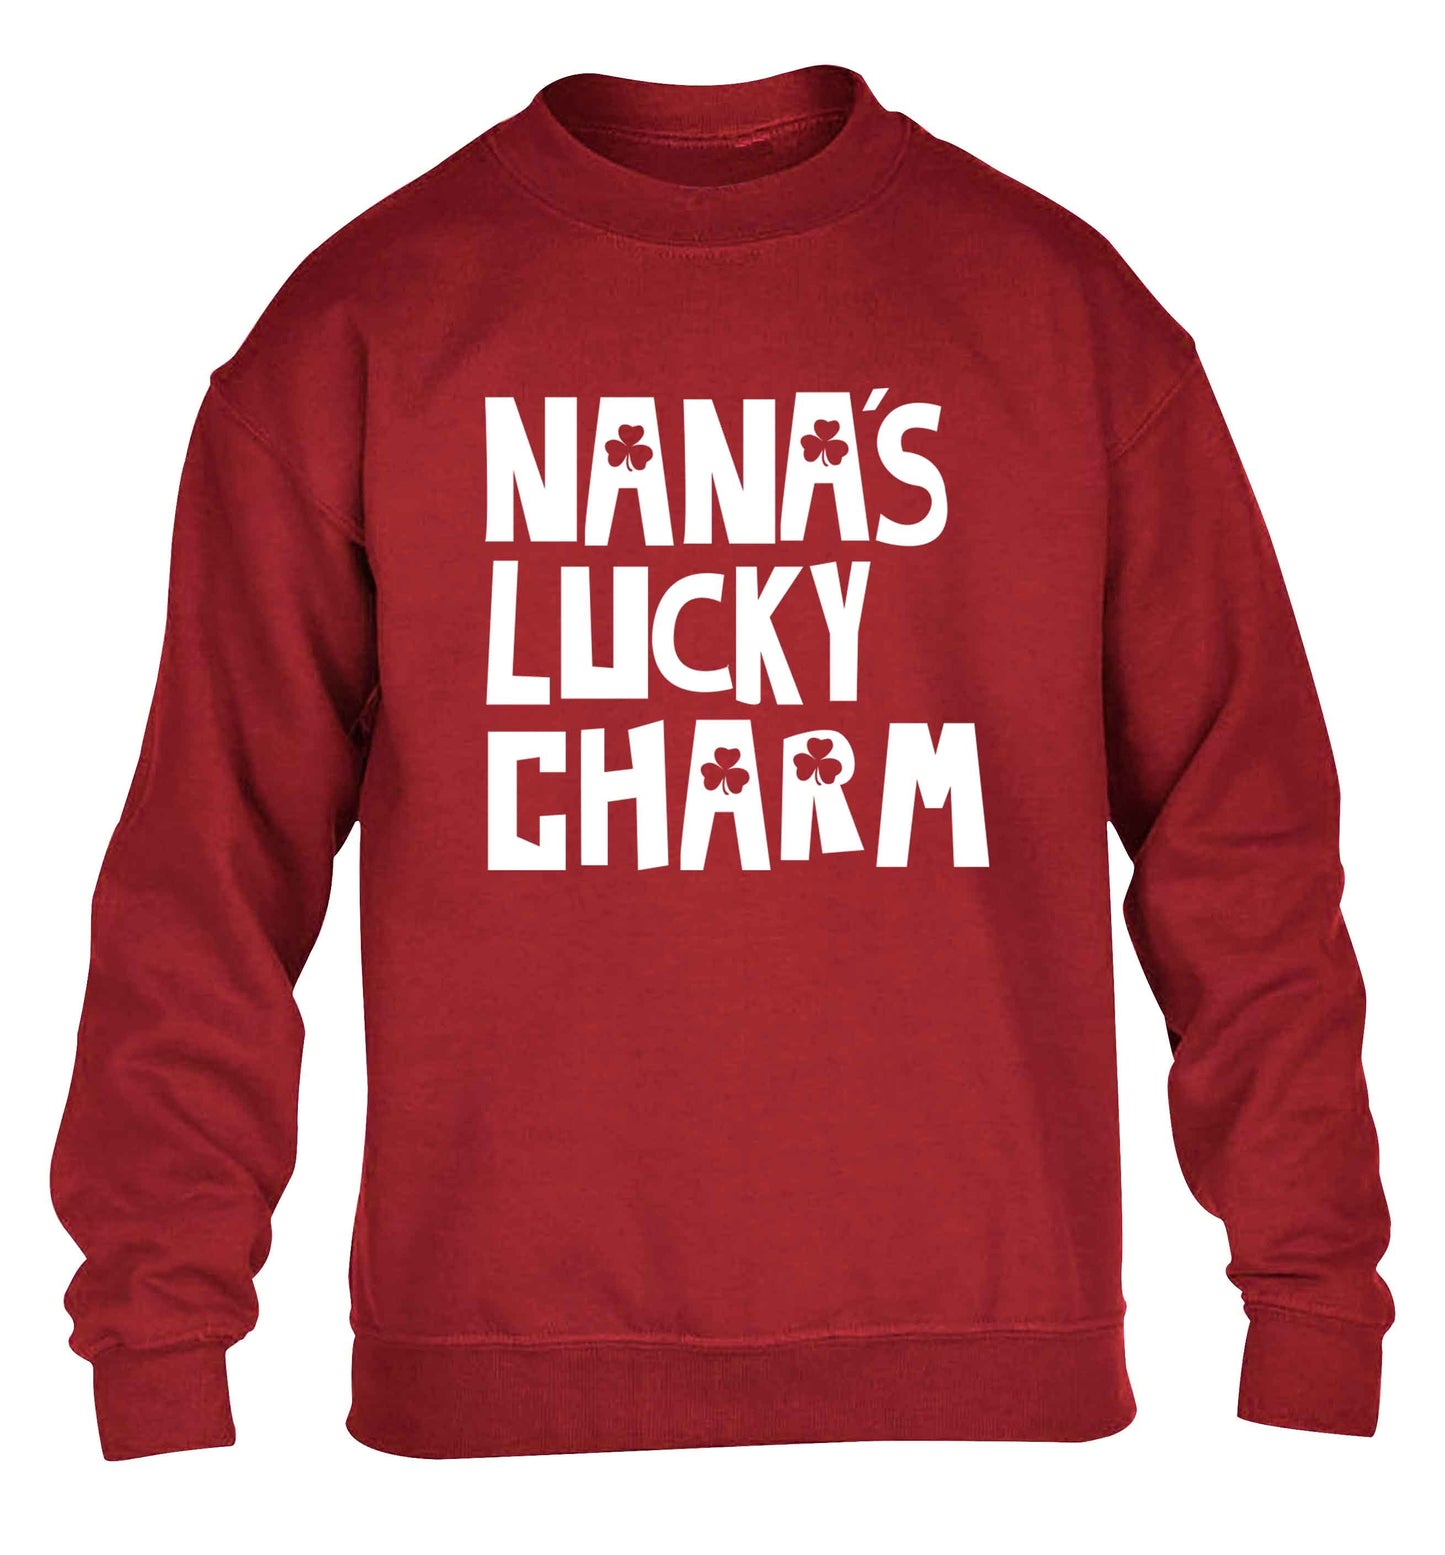 Nana's lucky charm children's grey sweater 12-13 Years